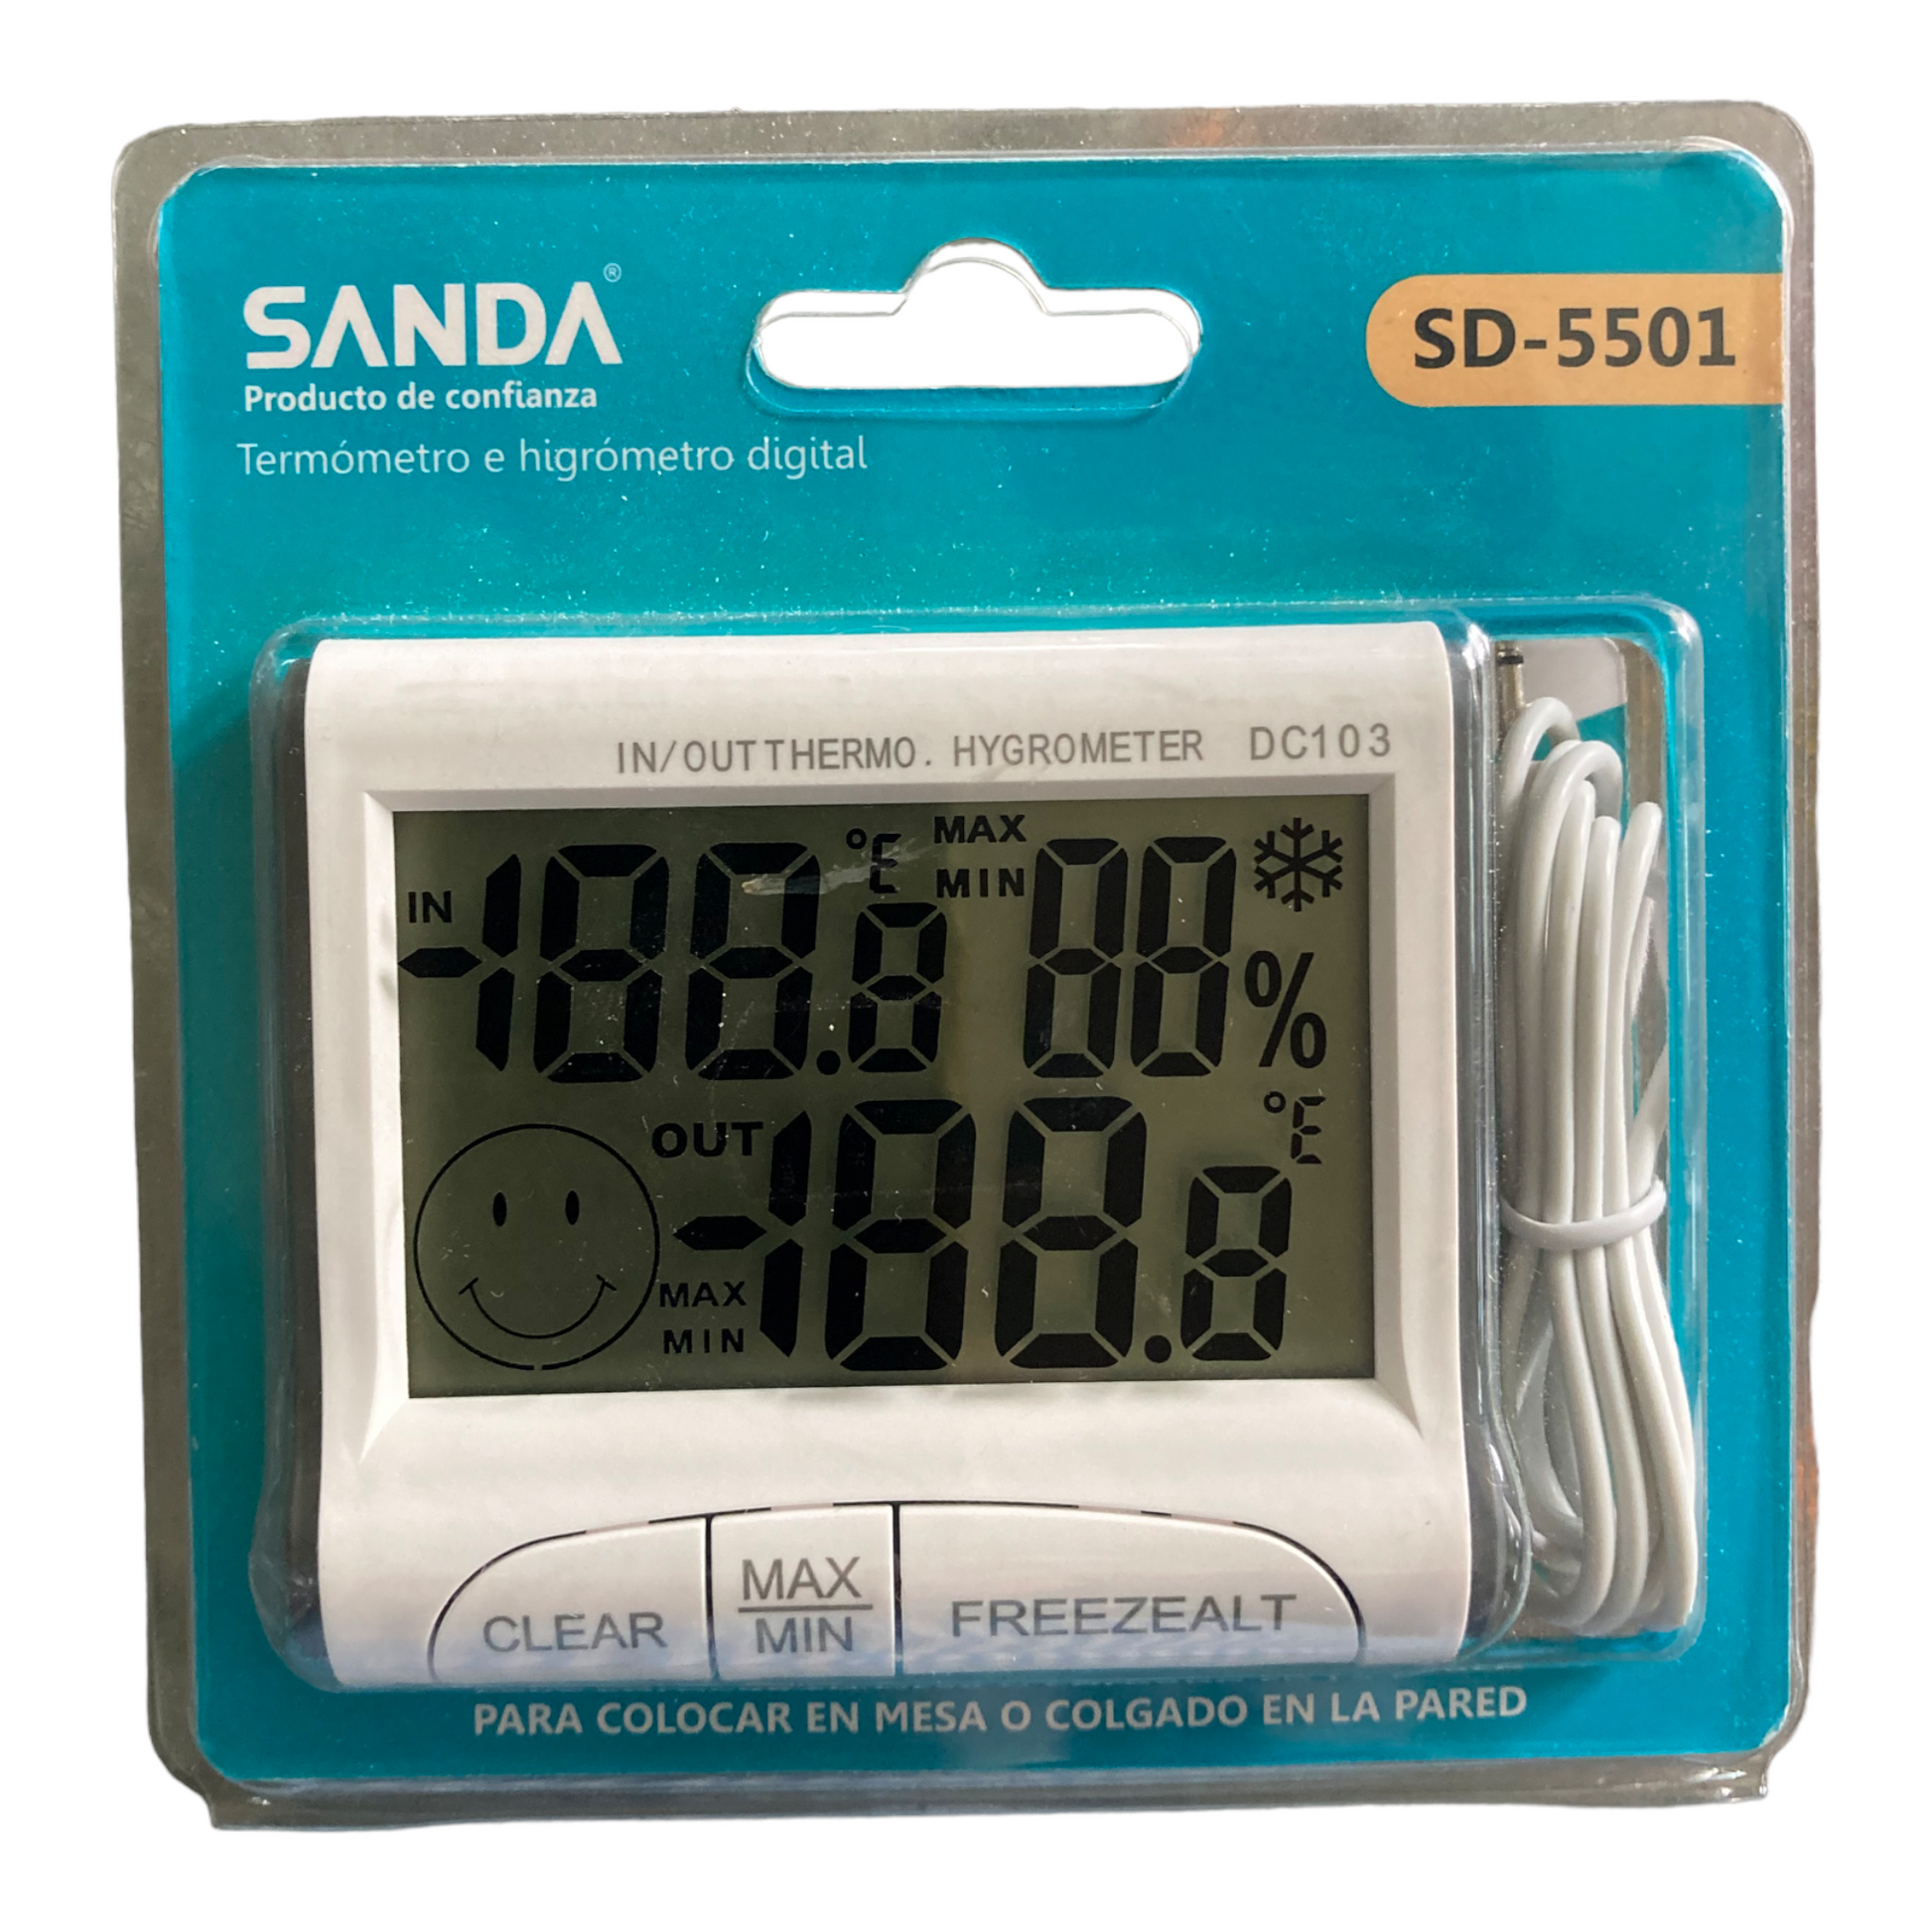 Termómetro e higrometro digital SANDA SD-5501 – Ferreteria RG